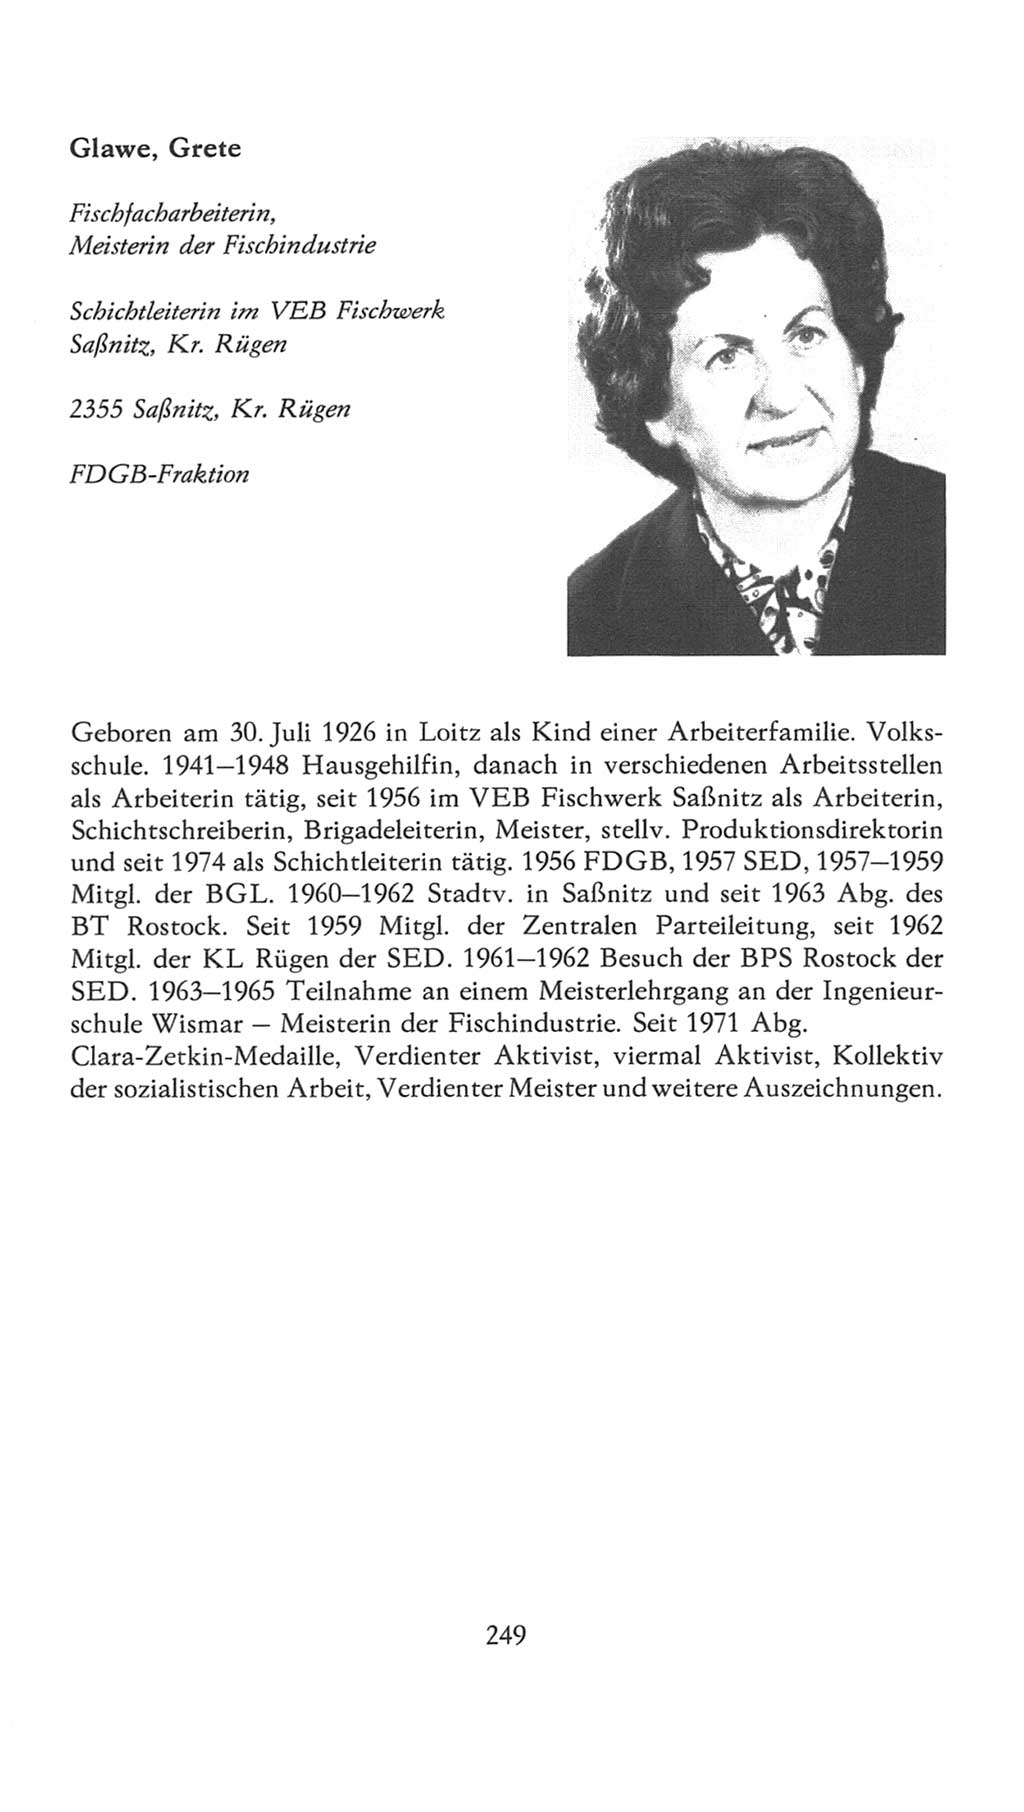 Volkskammer (VK) der Deutschen Demokratischen Republik (DDR), 7. Wahlperiode 1976-1981, Seite 249 (VK. DDR 7. WP. 1976-1981, S. 249)